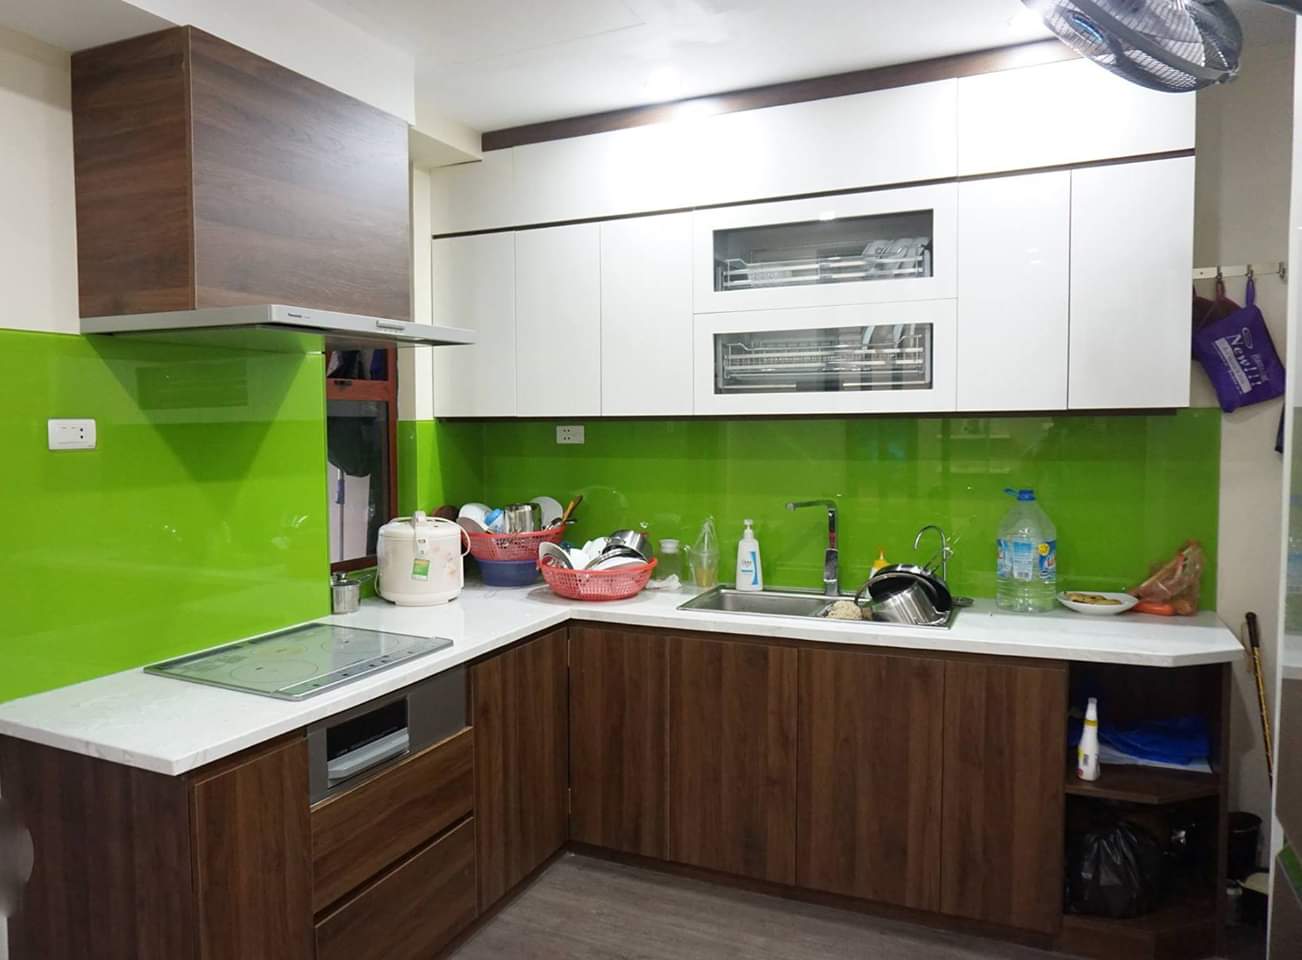 Nội thất Acado cung cấp kính bếp màu theo phong thủy bền, chịu nhiệt tốt, giá rẻ nhất Hà Nội.